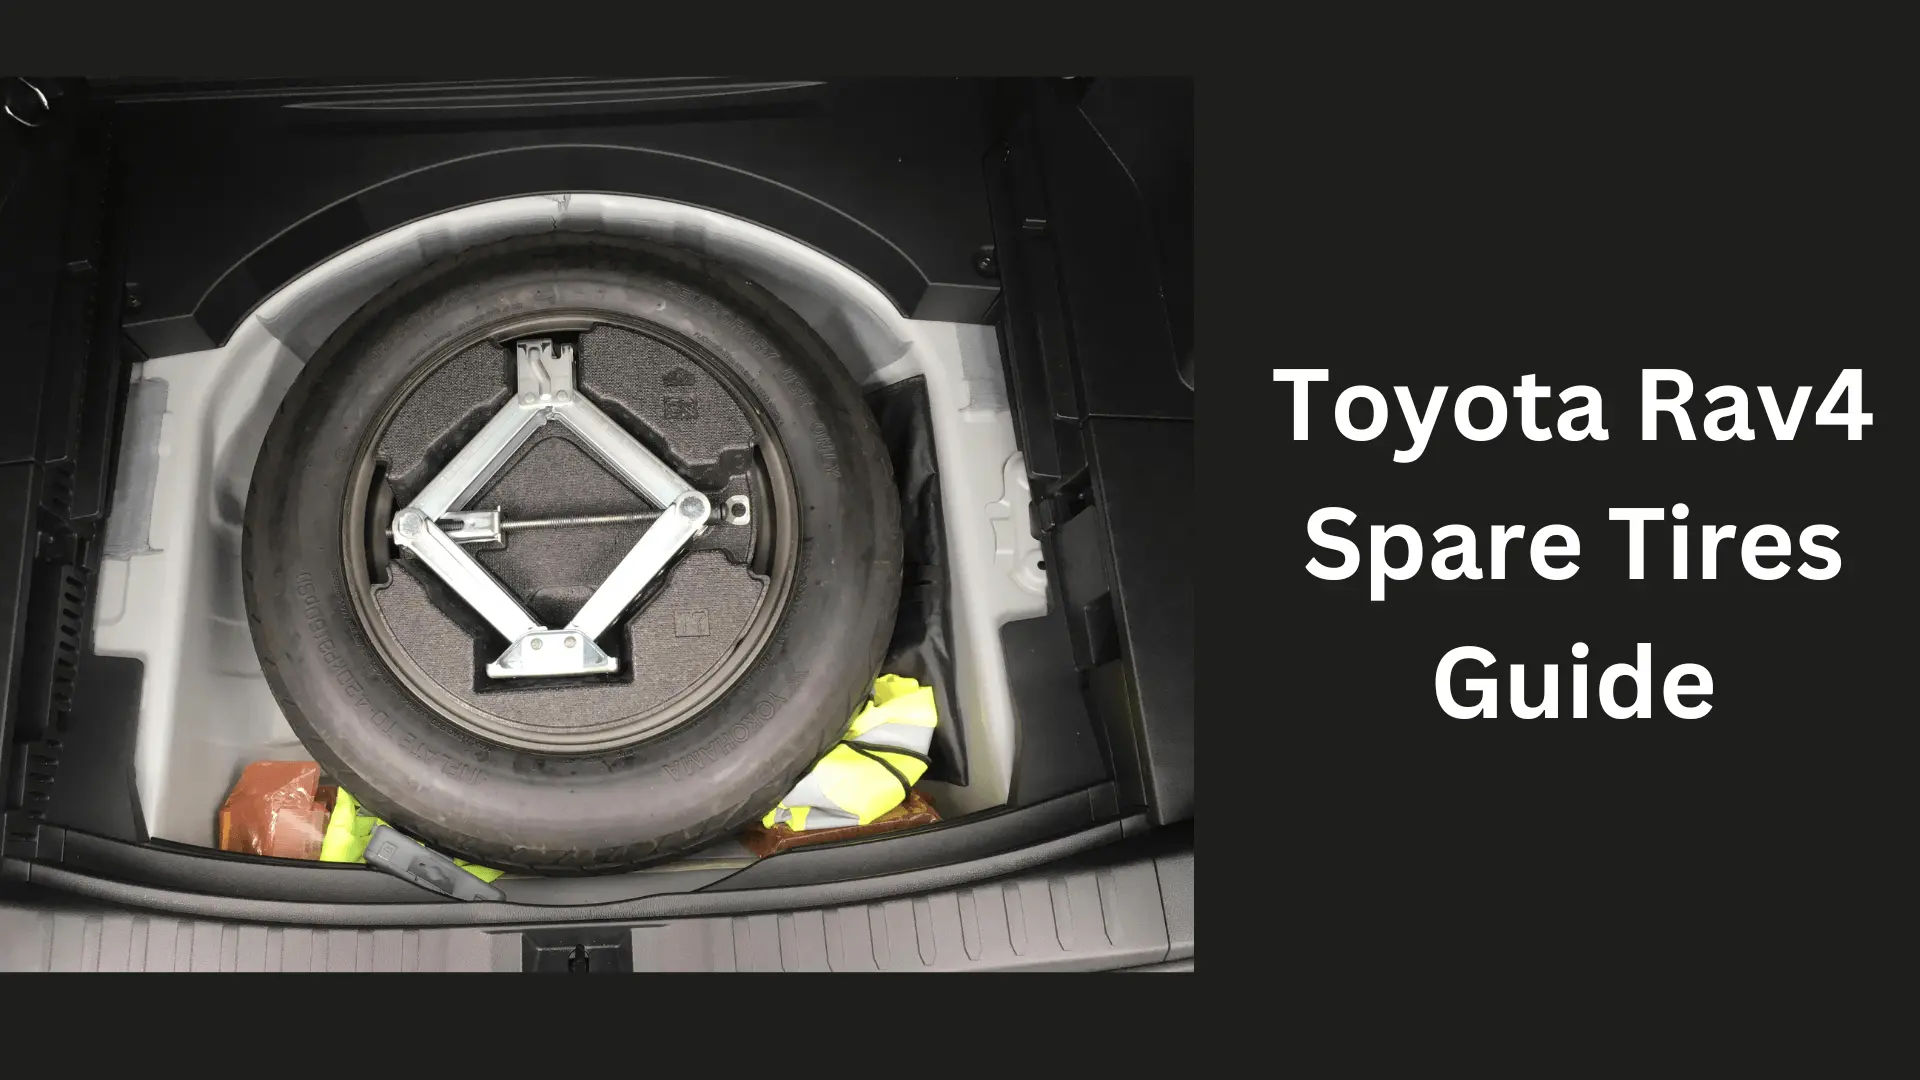 Toyota Rav4 Spare Tires Guide